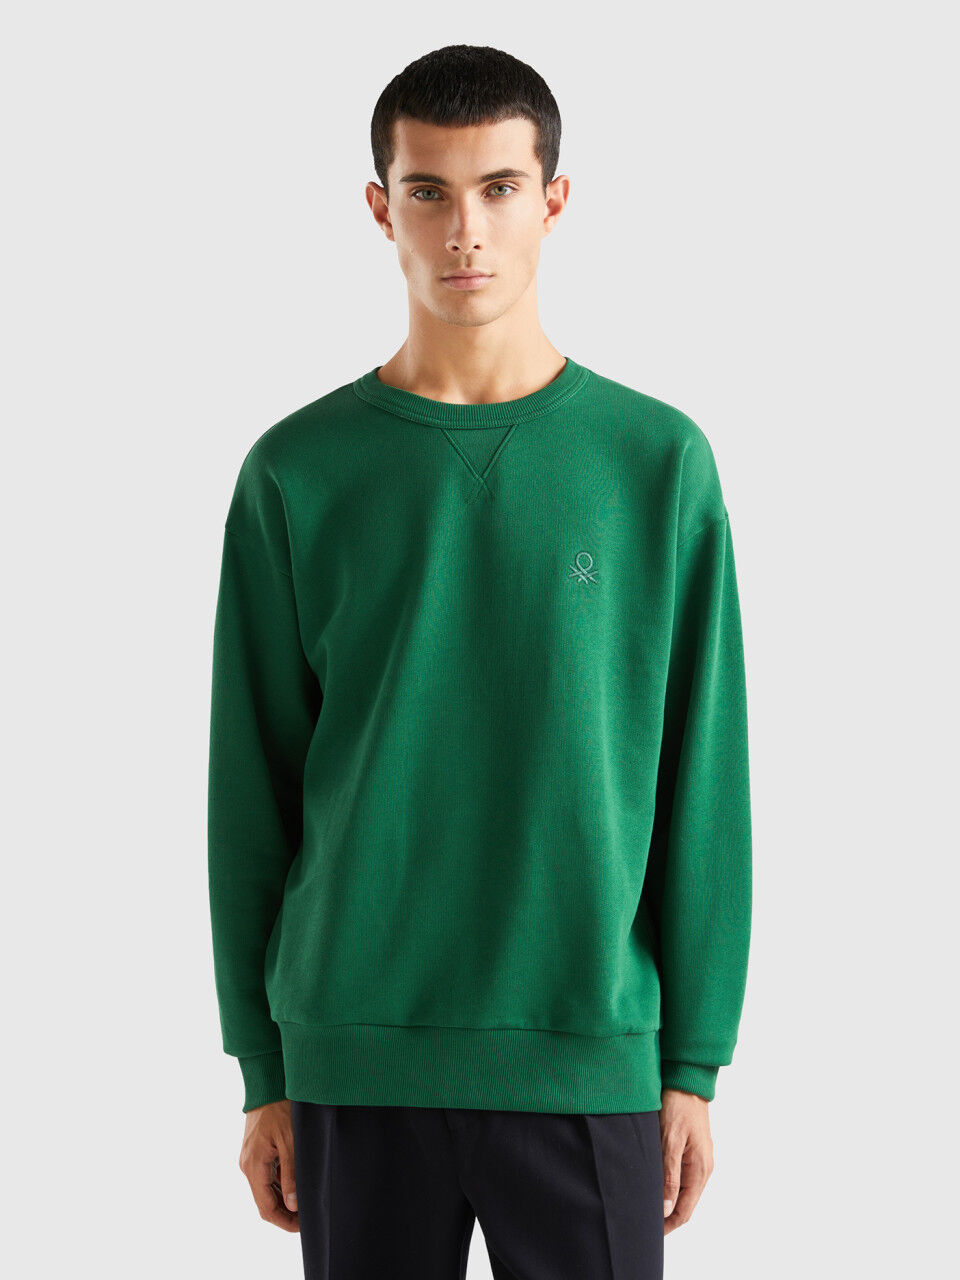 Colorblocked Crewneck Sweatshirt - Multi-color